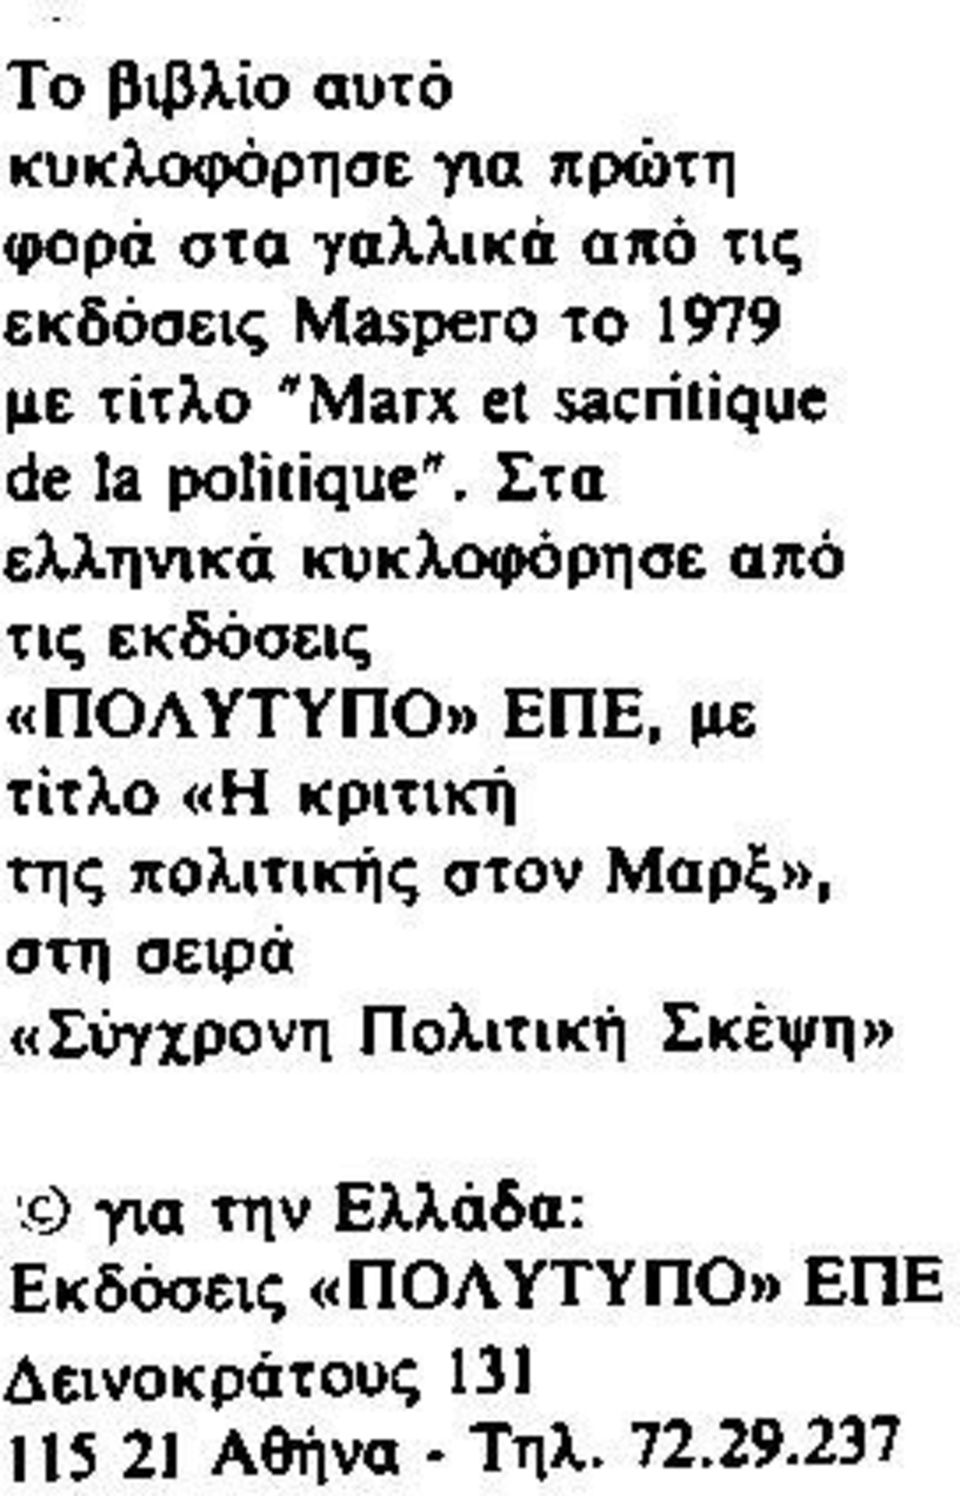 Στα ελληνικά κυκλοφόρησε από τις εκδόσεις «ΠΟΛΥΤΥΠΟ» ΕΠΕ, με τίτλο «Η κριτική της